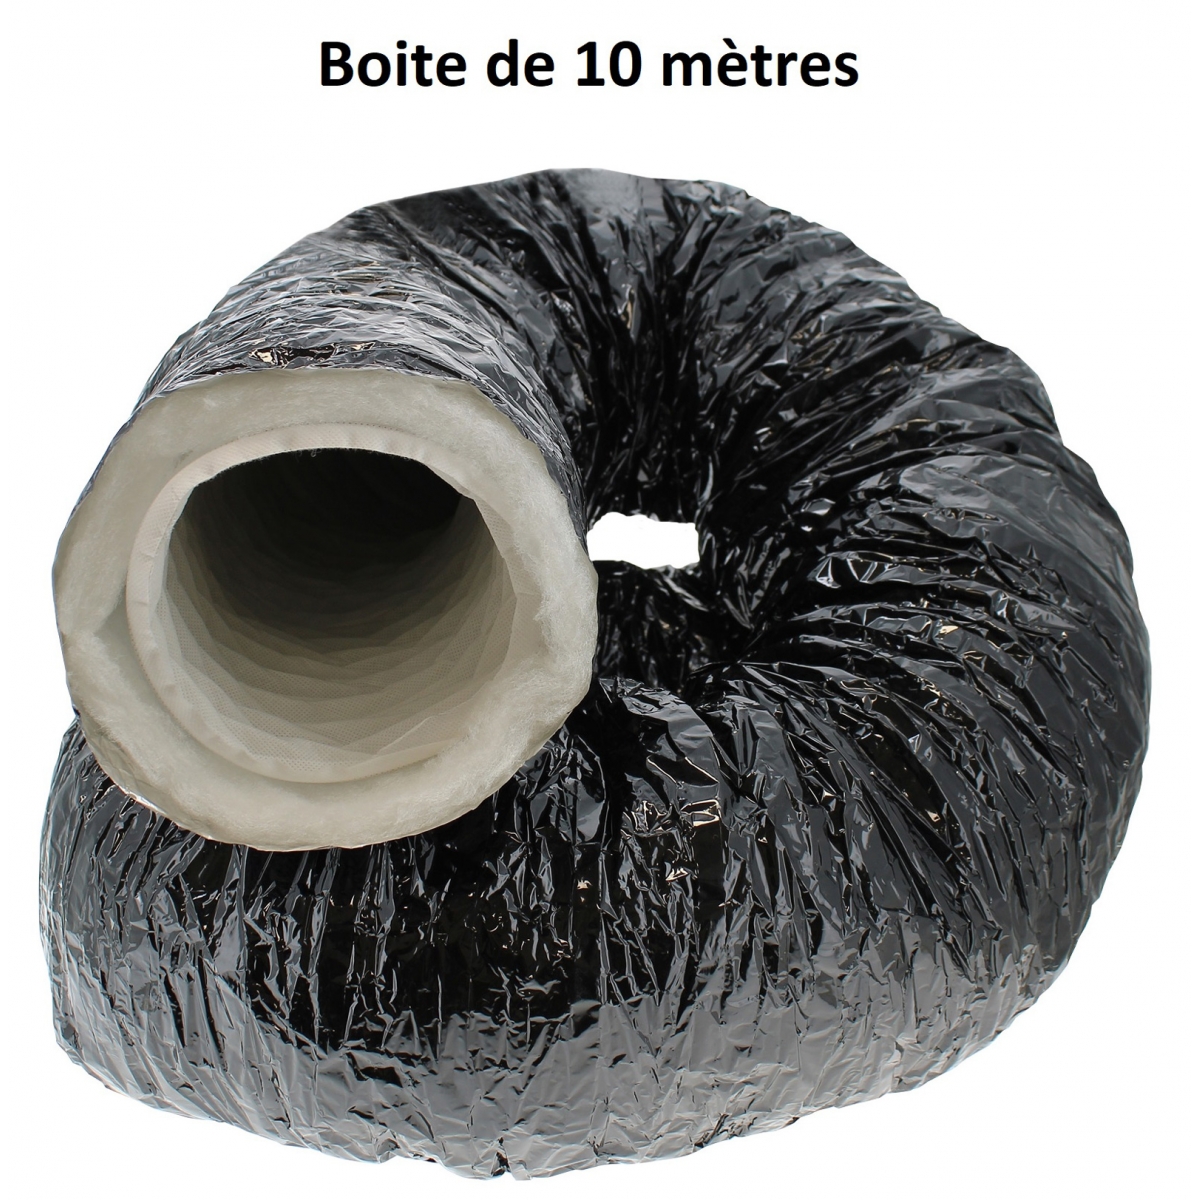 https://static.hydrozone.fr/13653-thickbox_default/gaine-de-ventilation-pro-ouate-diam-100mm-boite-de-10-metres.jpg